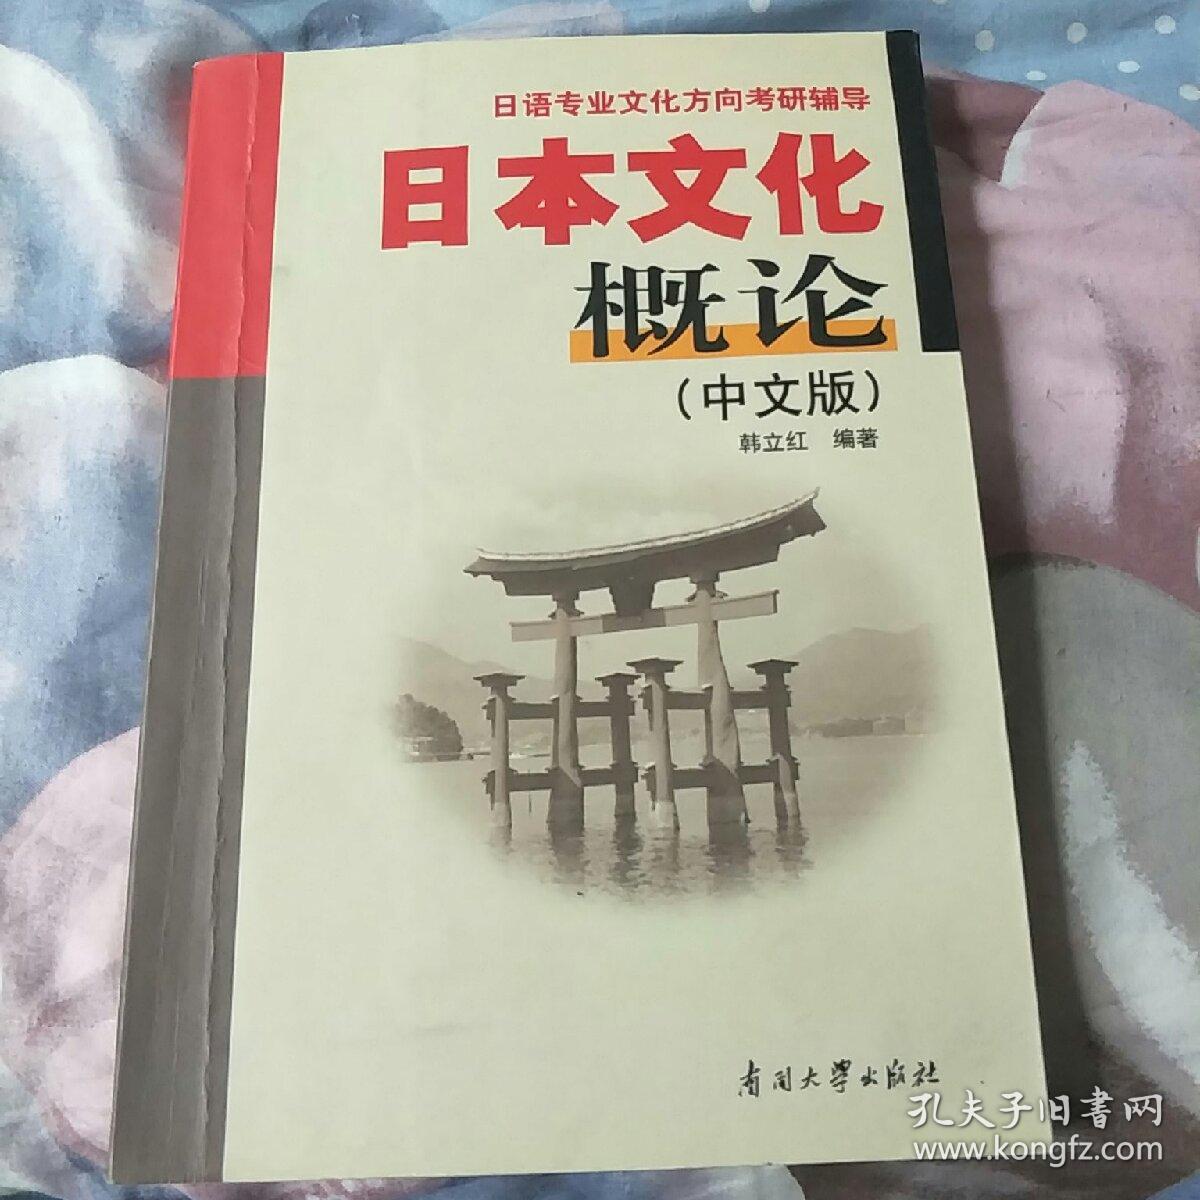 日语专业文化方向考研辅导:日本文化概论(中文